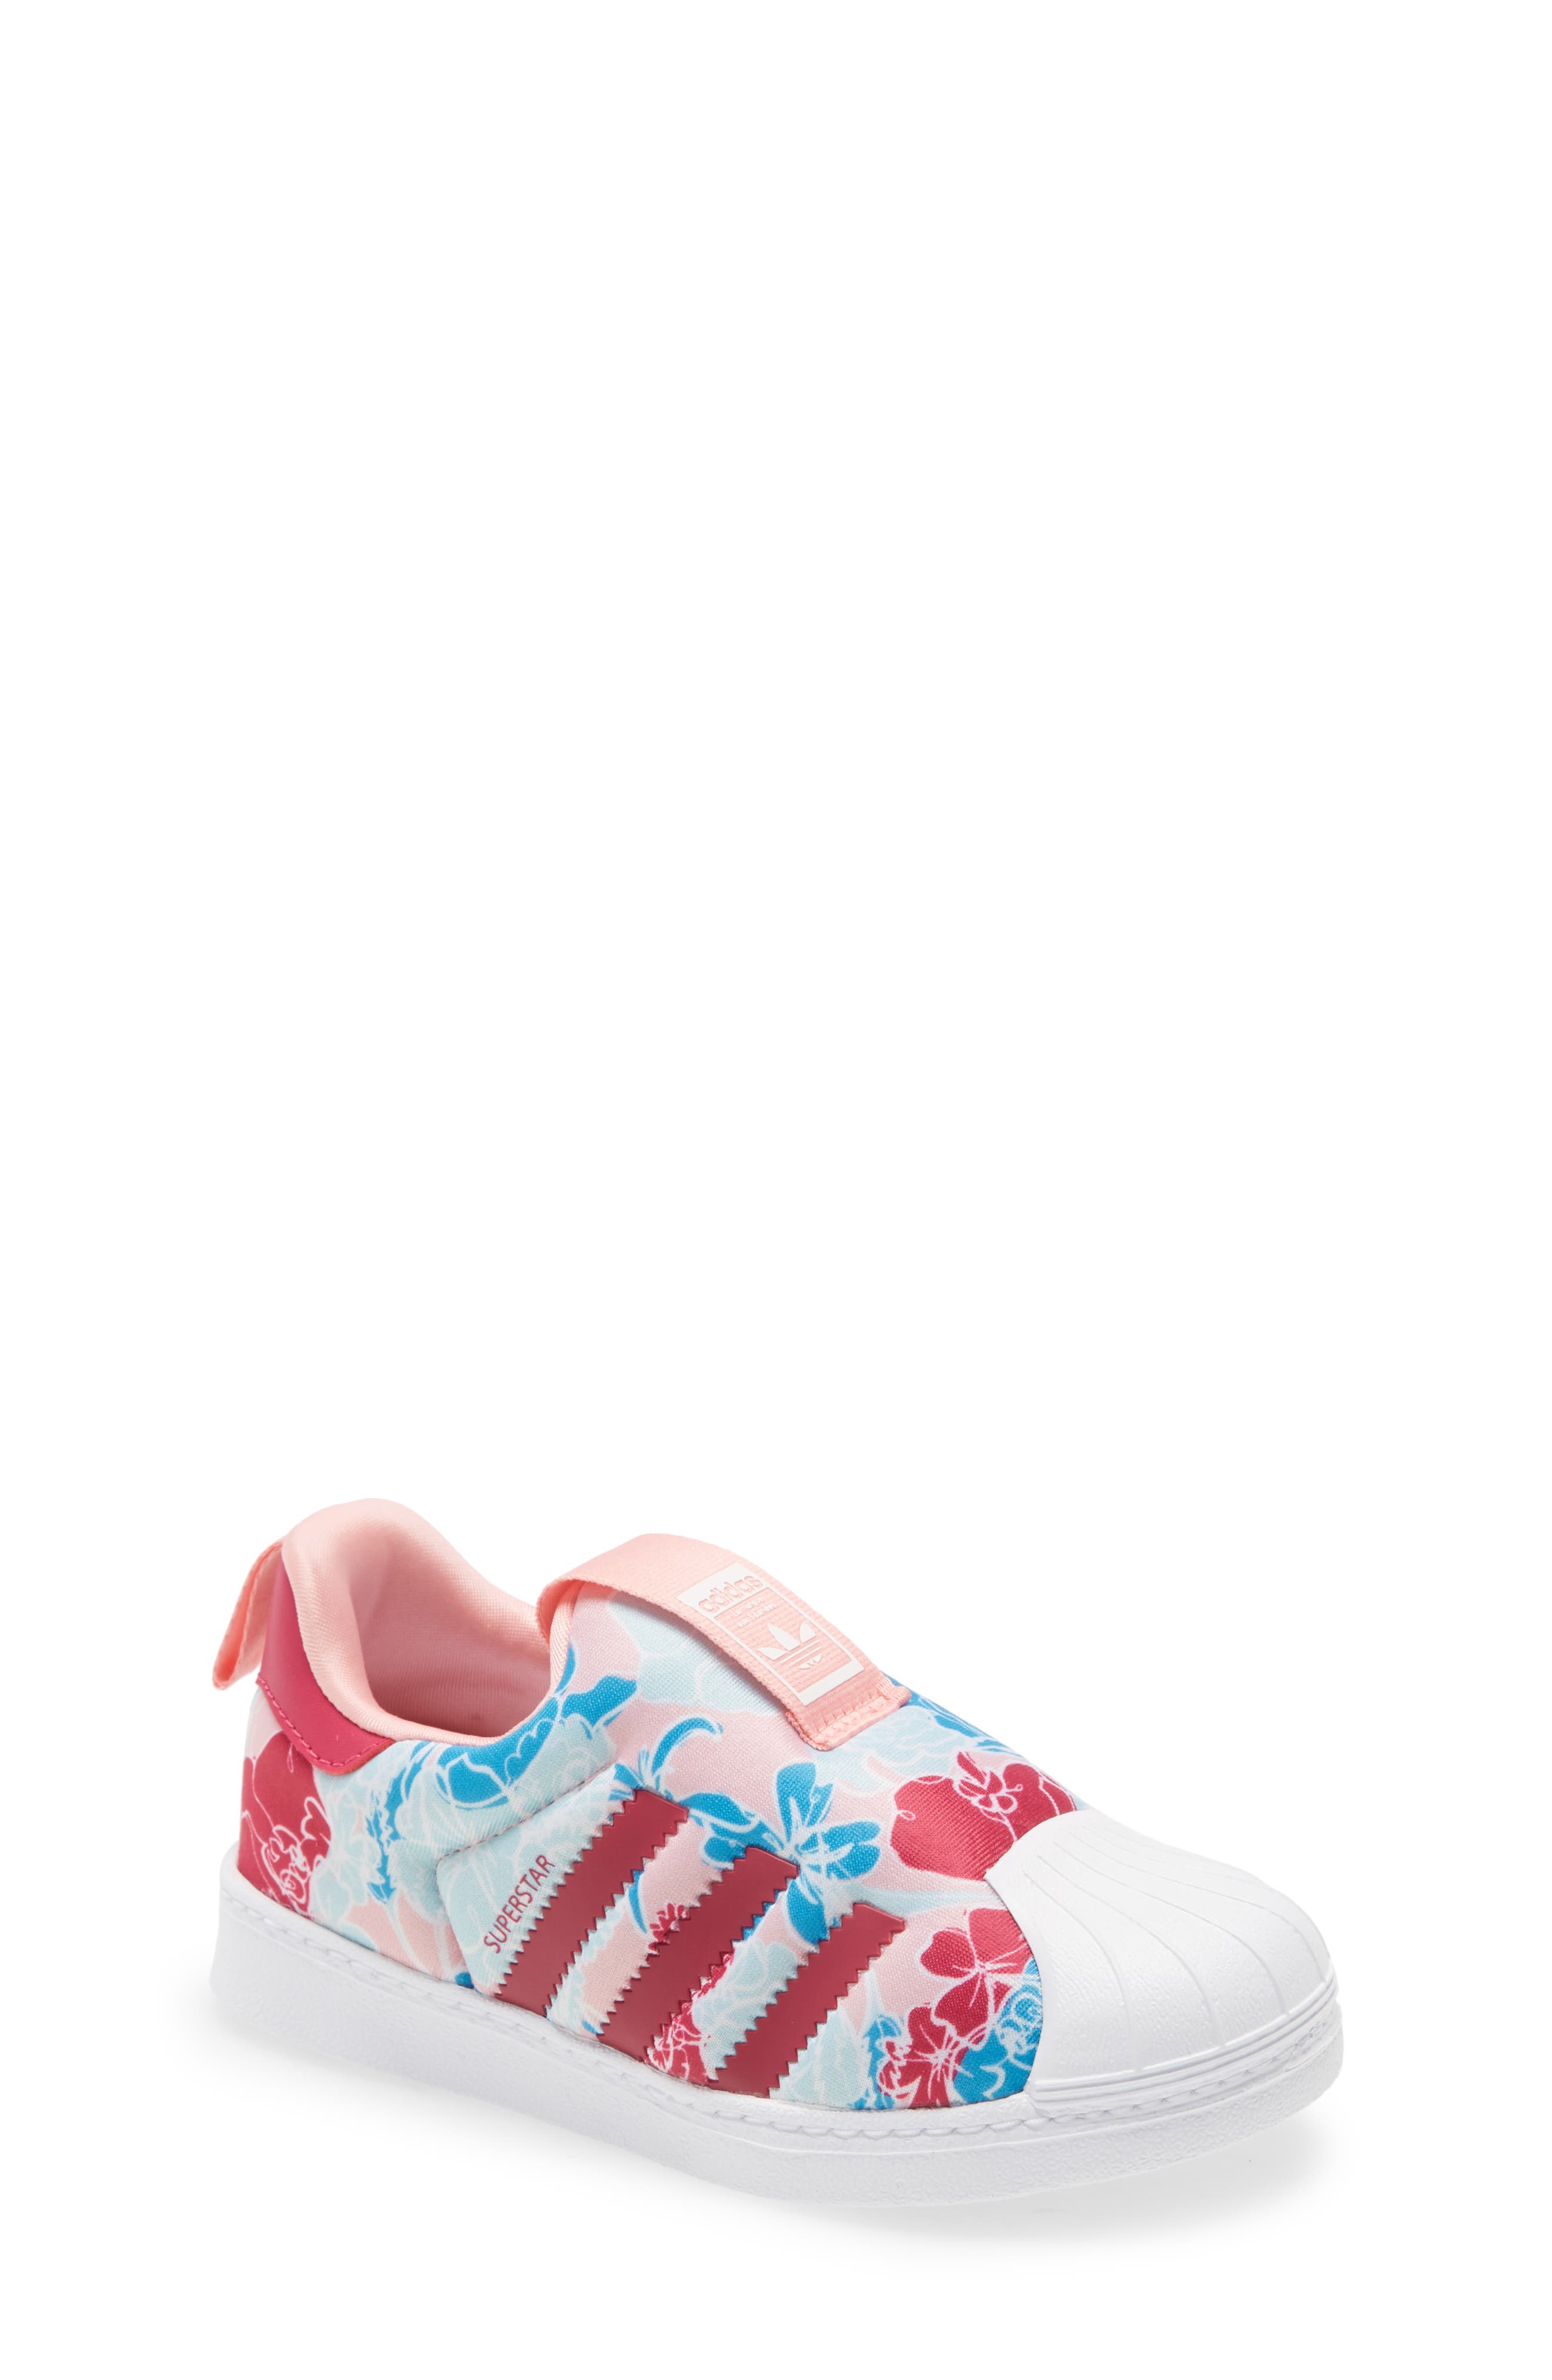 pink adidas shoes toddler